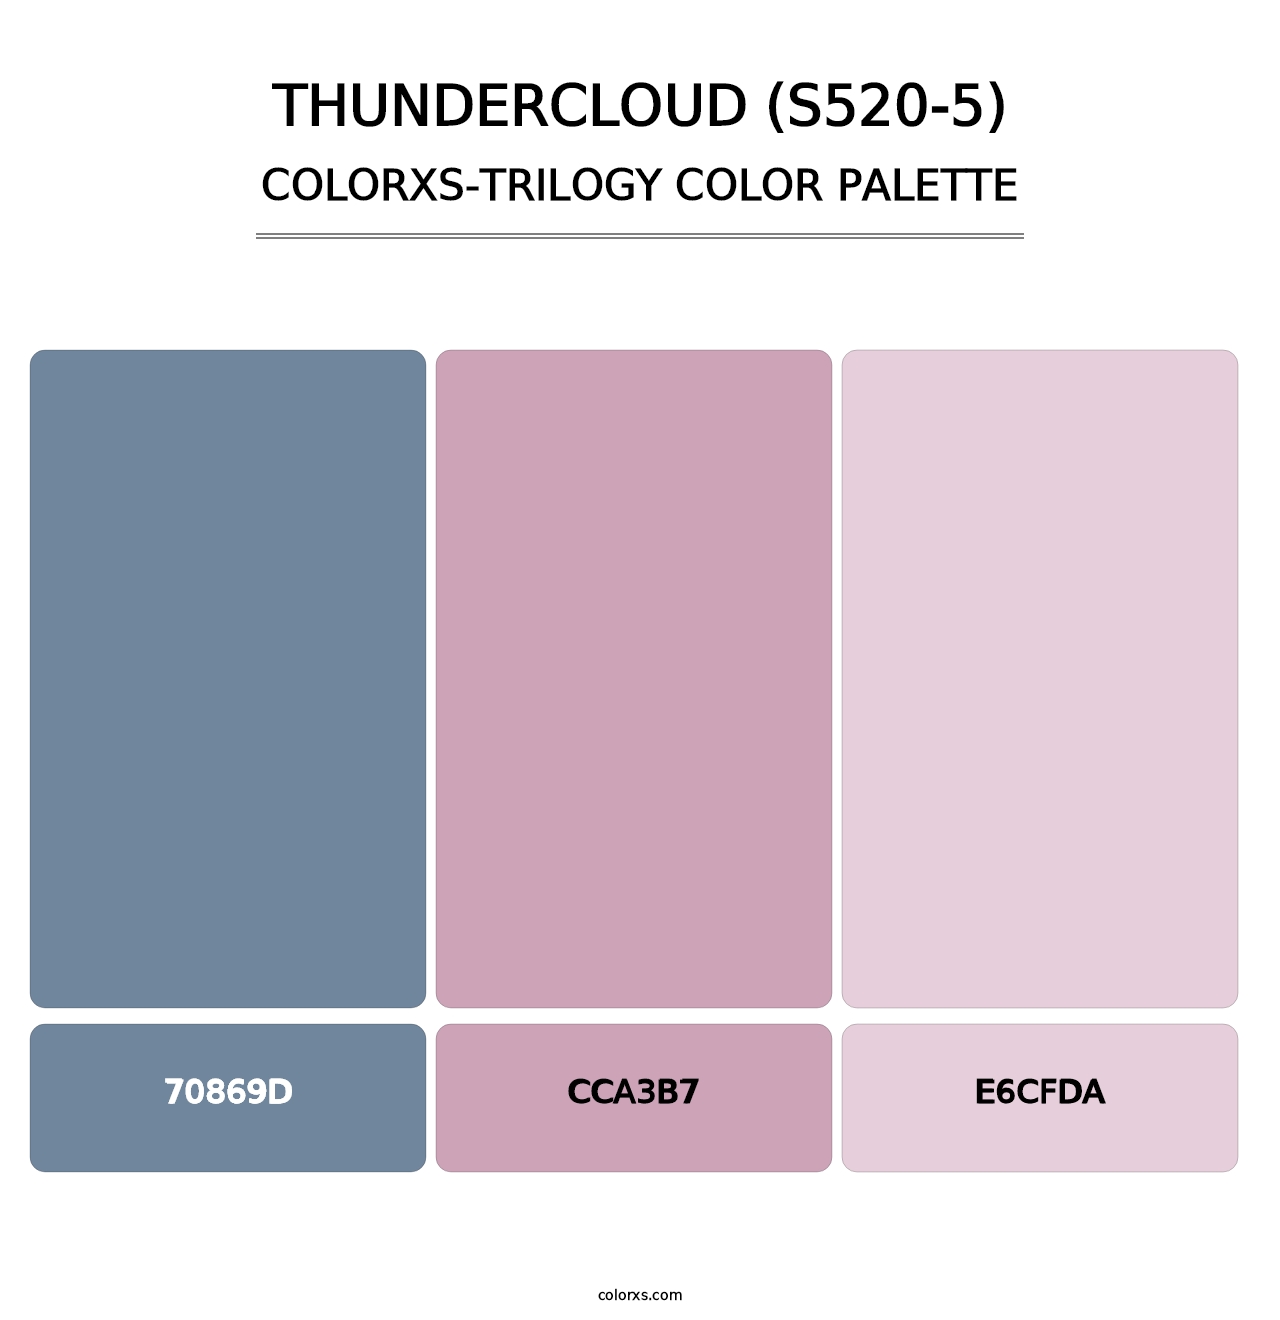 Thundercloud (S520-5) - Colorxs Trilogy Palette